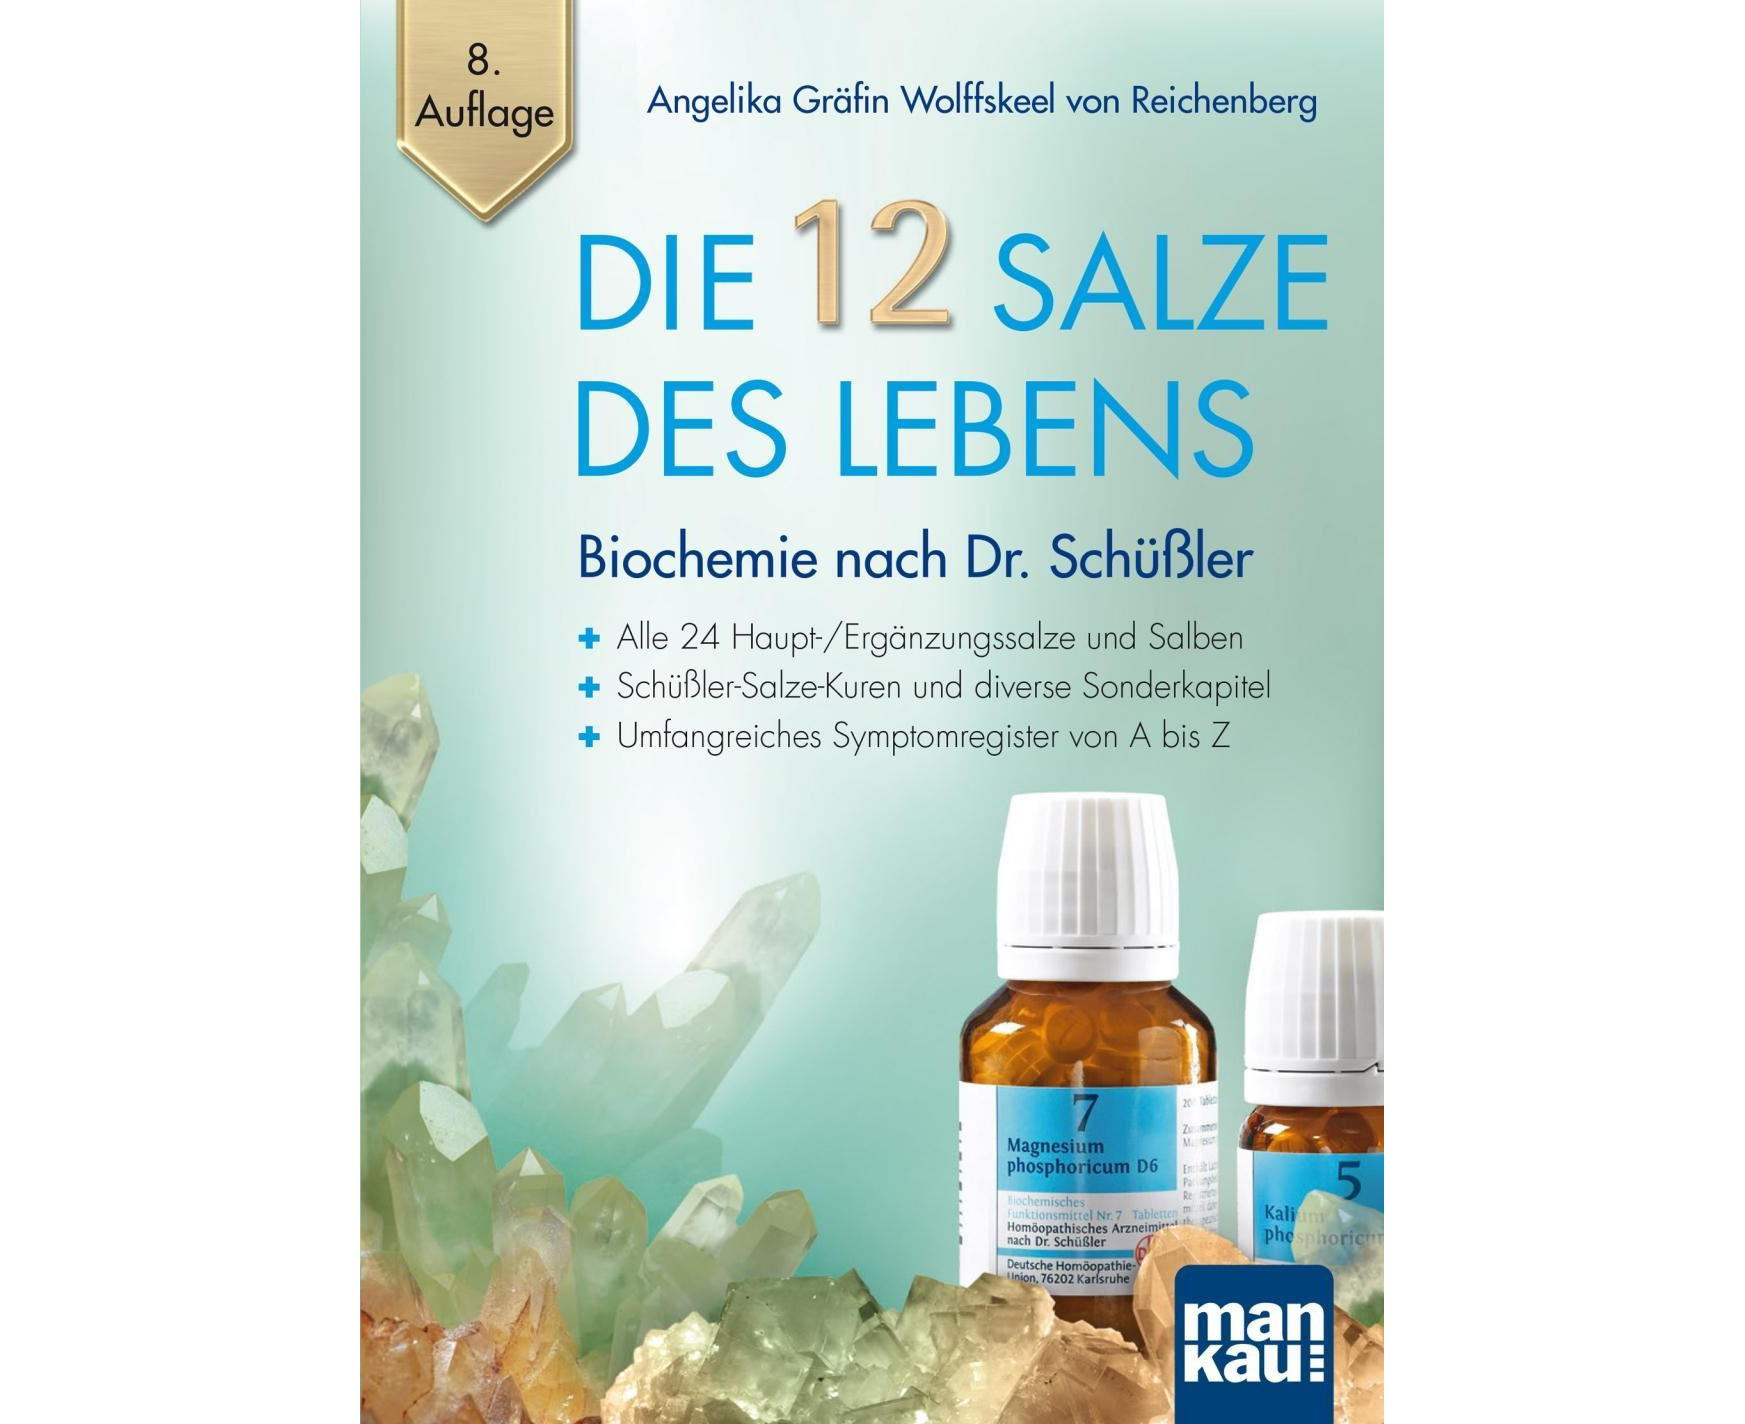 Die 12 Salze des Lebens - Biochemie nach Dr. Schüßler [German] | Www